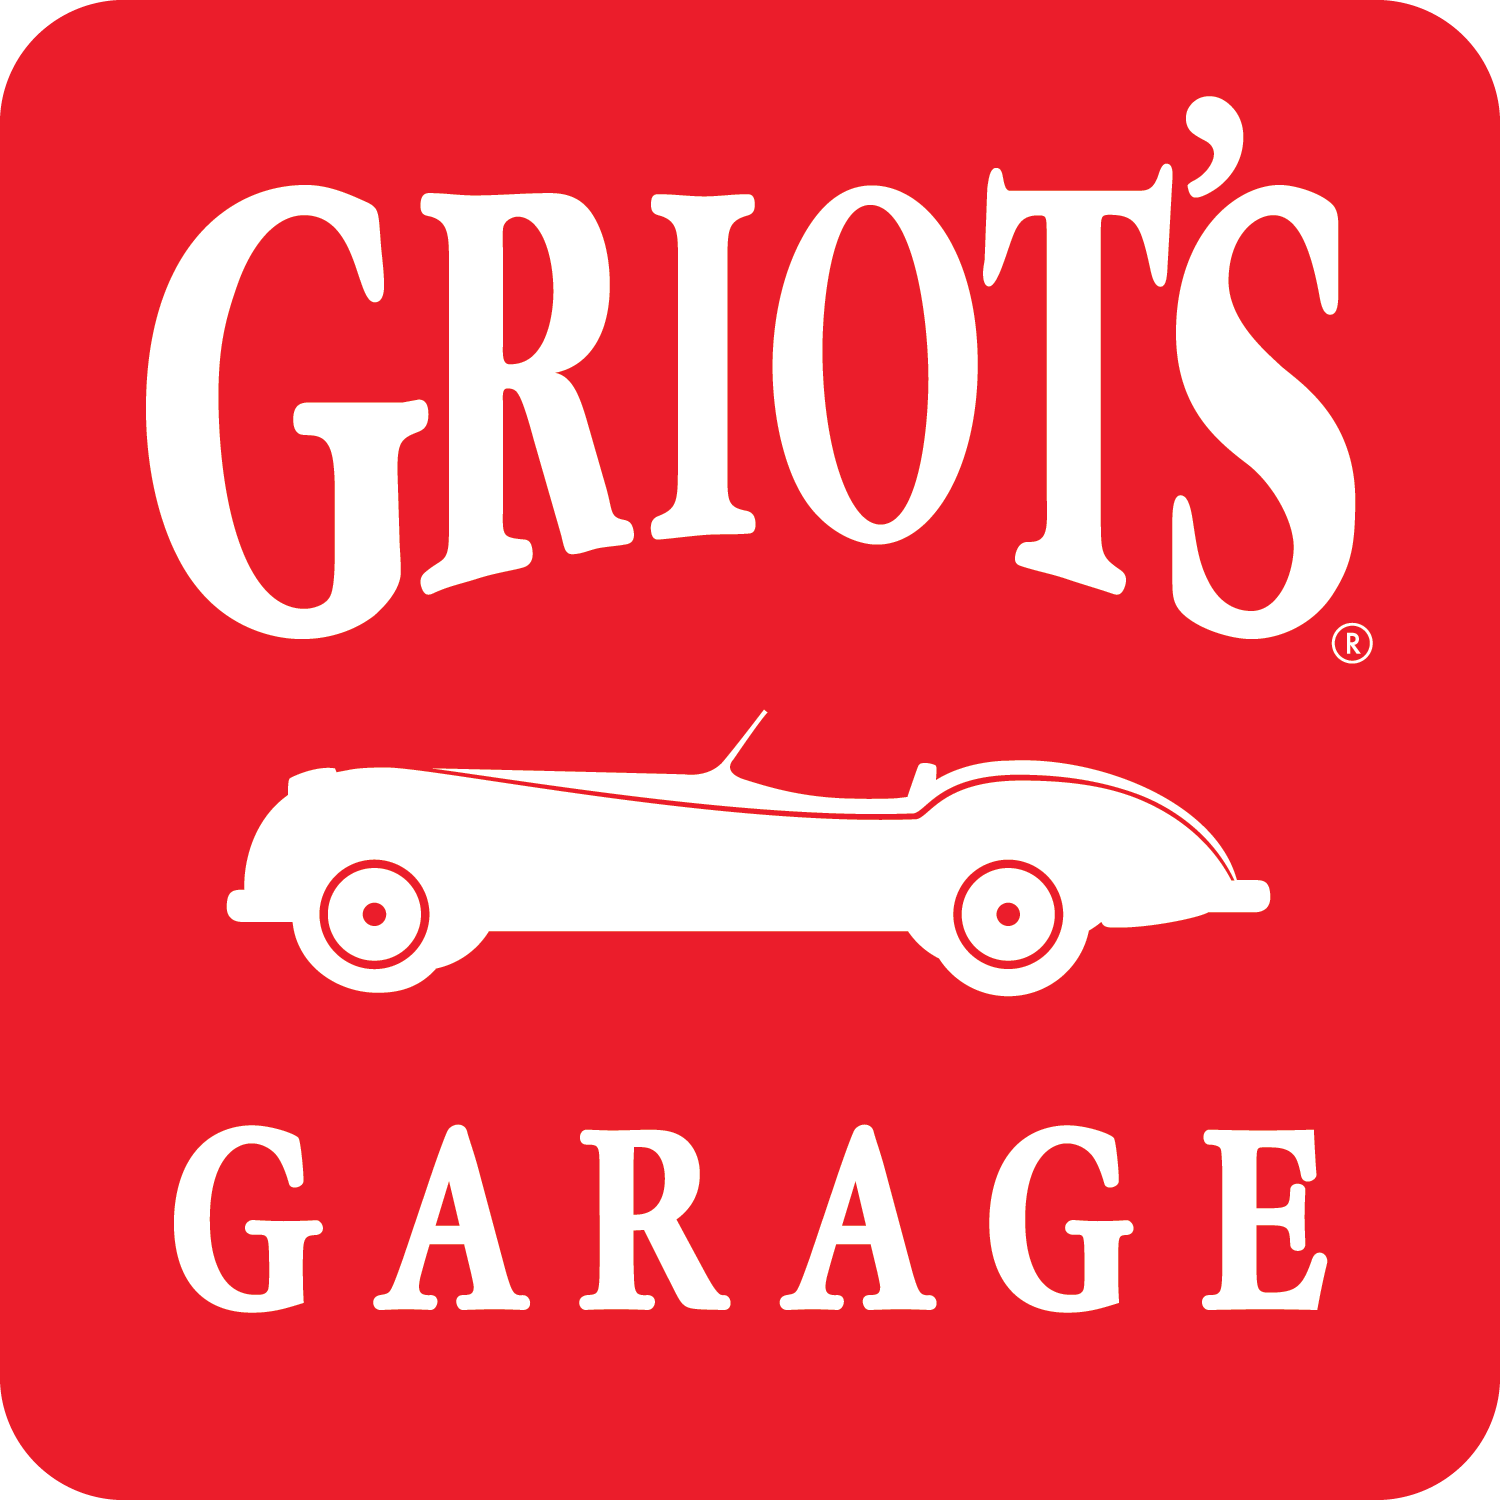 Griot’s Garage